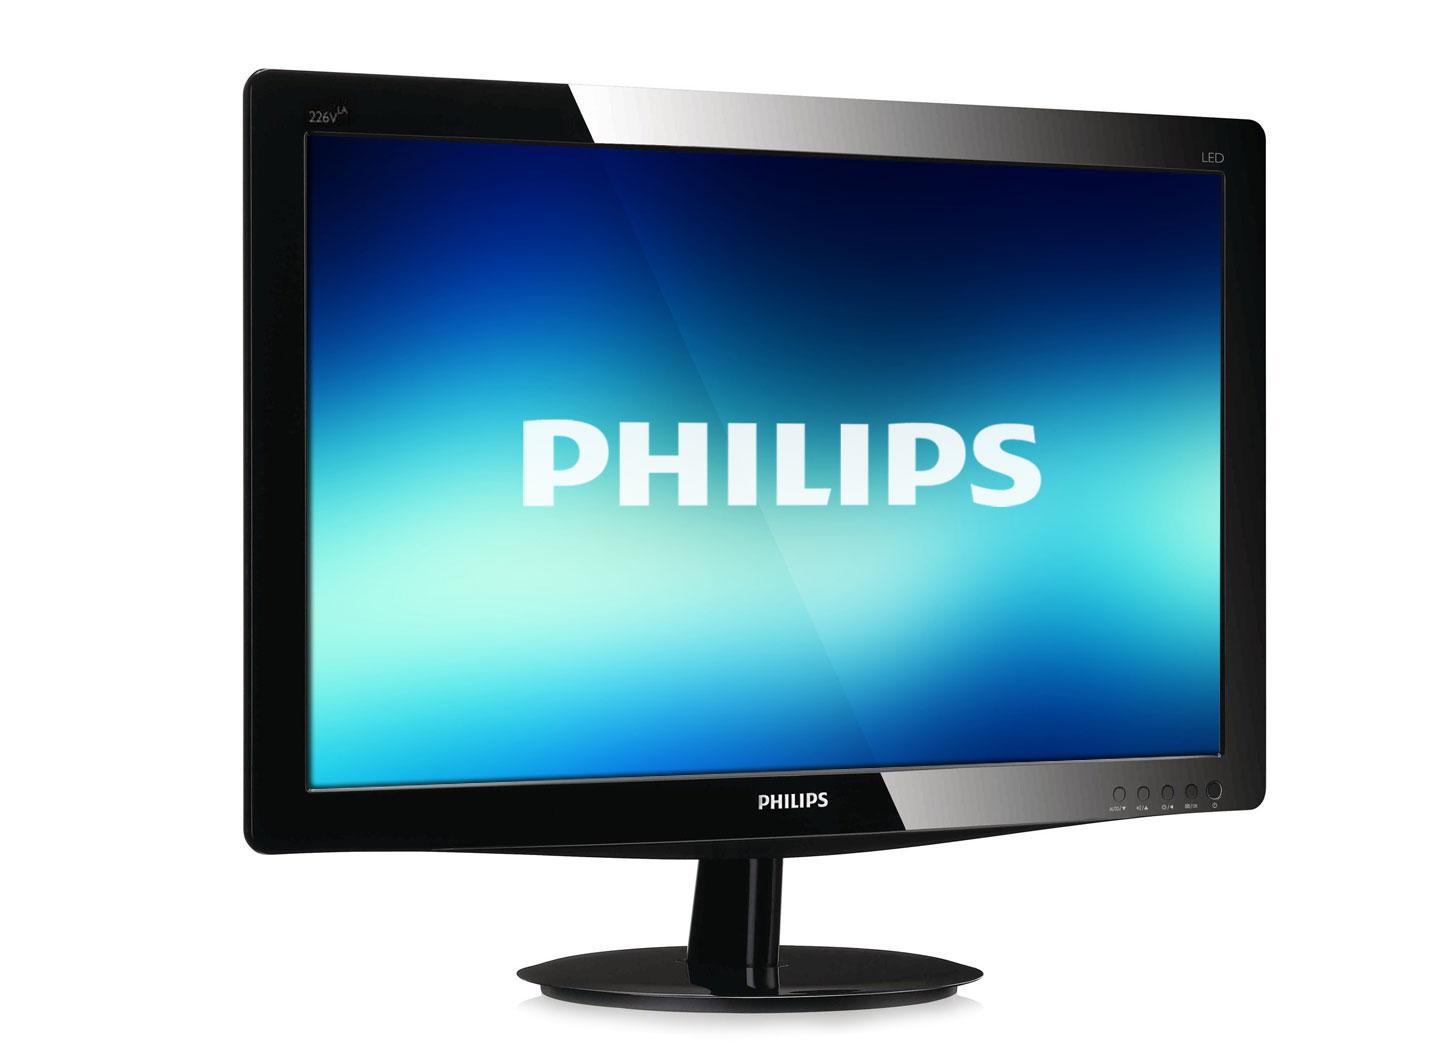 �������� �������� Philips (������) � ������ � ���� ����